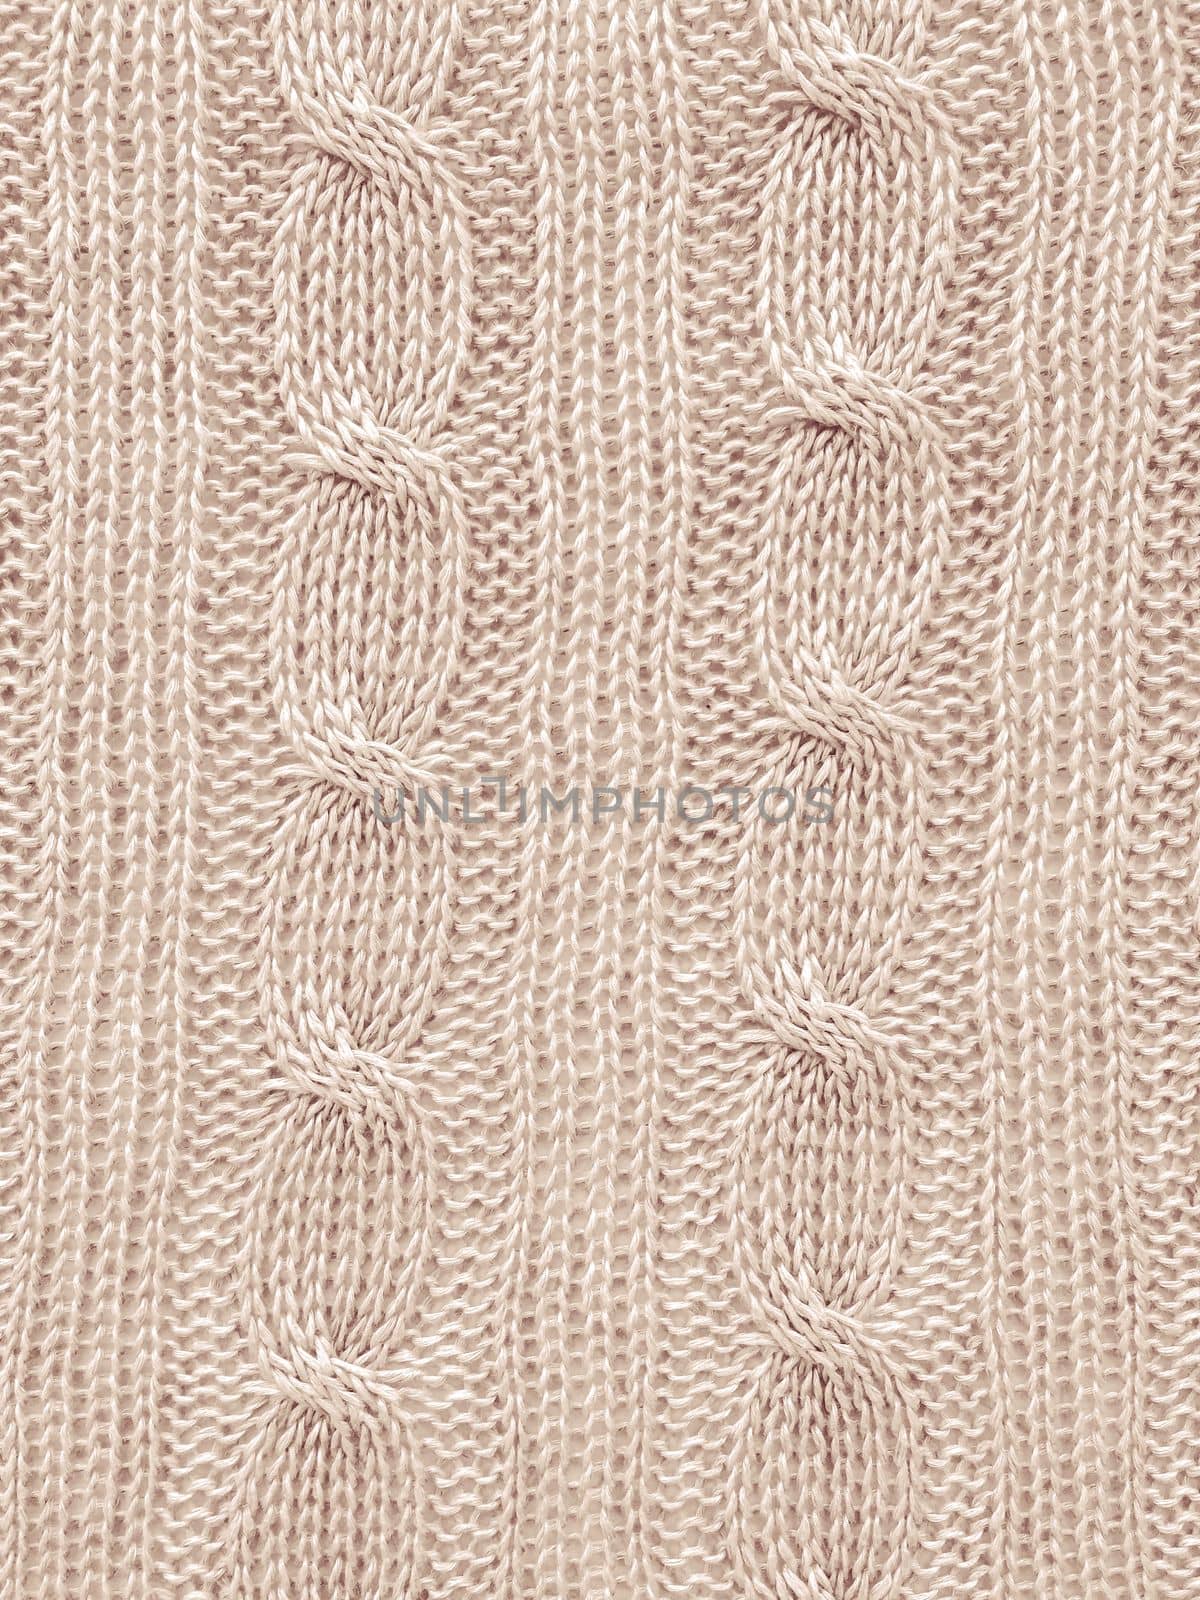 Beige Woven Fabrics. Scandinavian Cotton Wallpaper. Abstract Closeup Thread. Organic Handmade Canvas. Jacquard Knitting. Winter Wool Textile. Knitwear Linen Background. Texture Knitted Fabric.